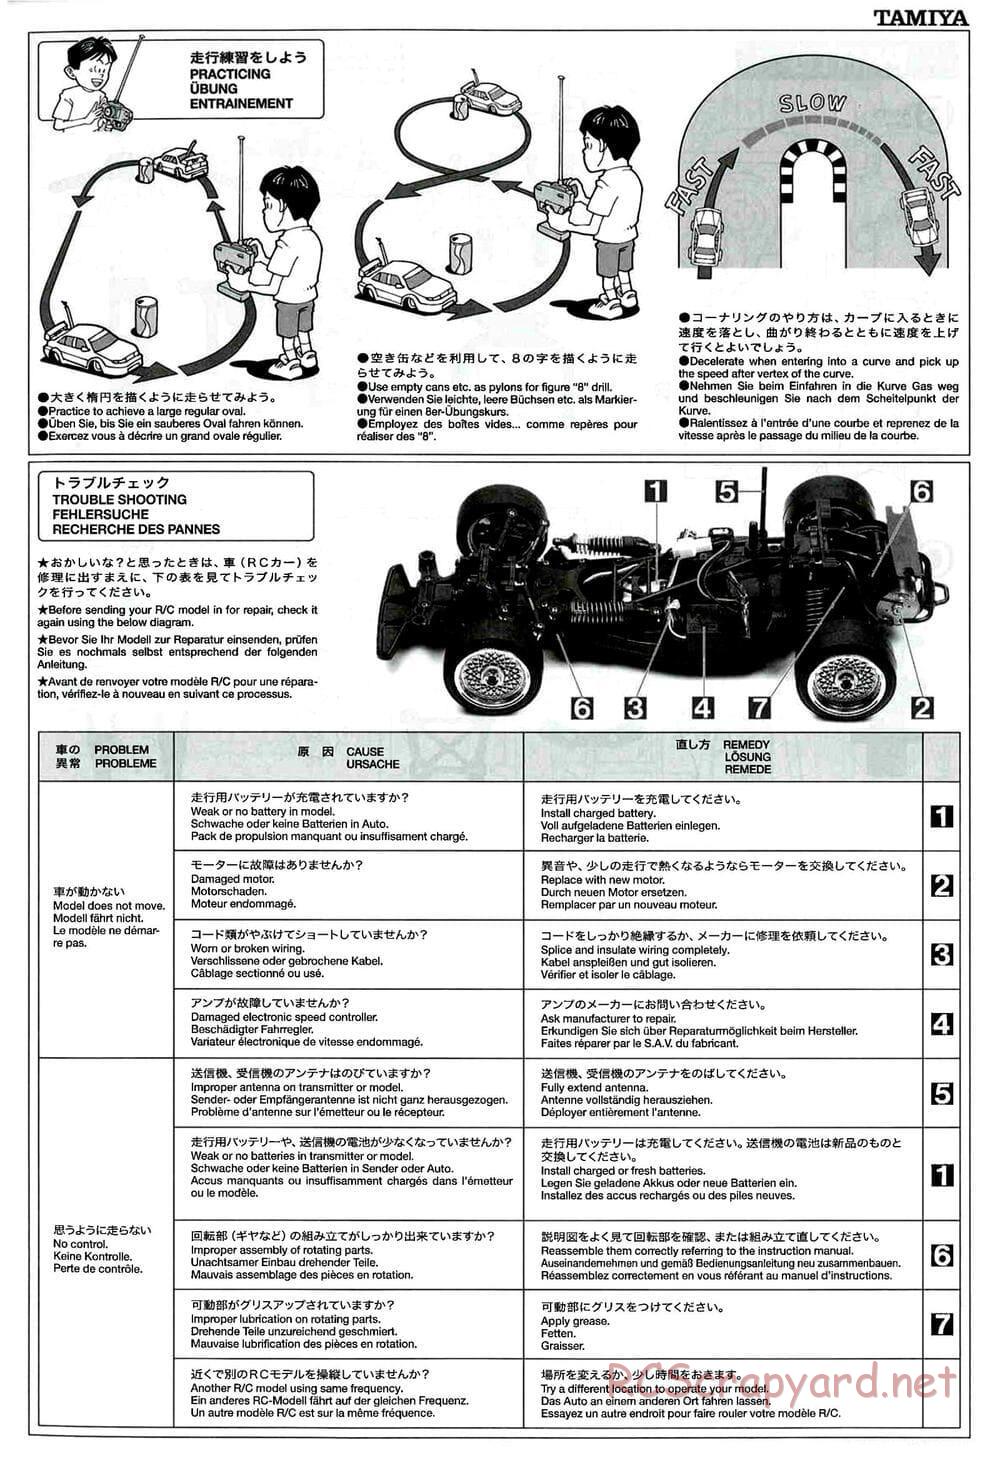 Tamiya - GT-01 Chassis - Manual - Page 18